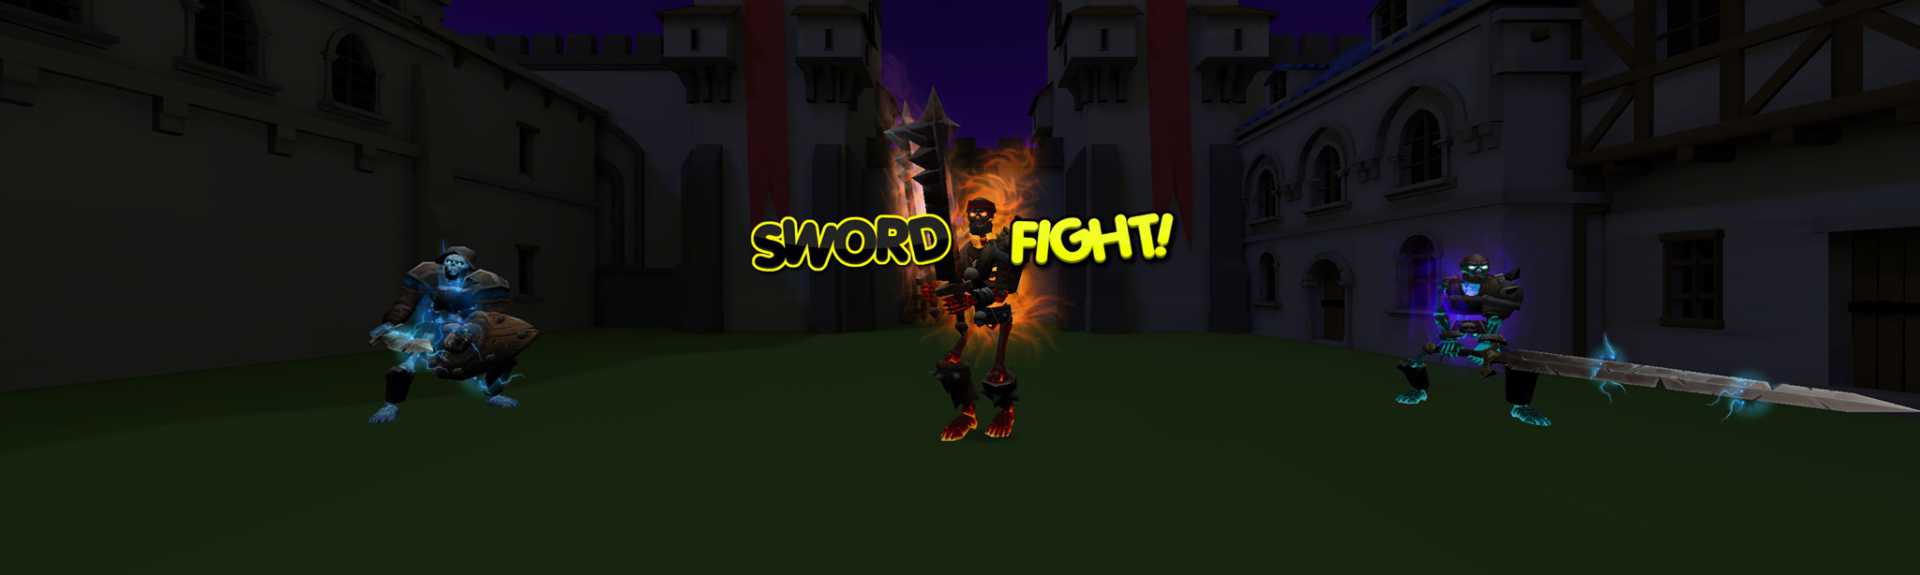 SwordFight!